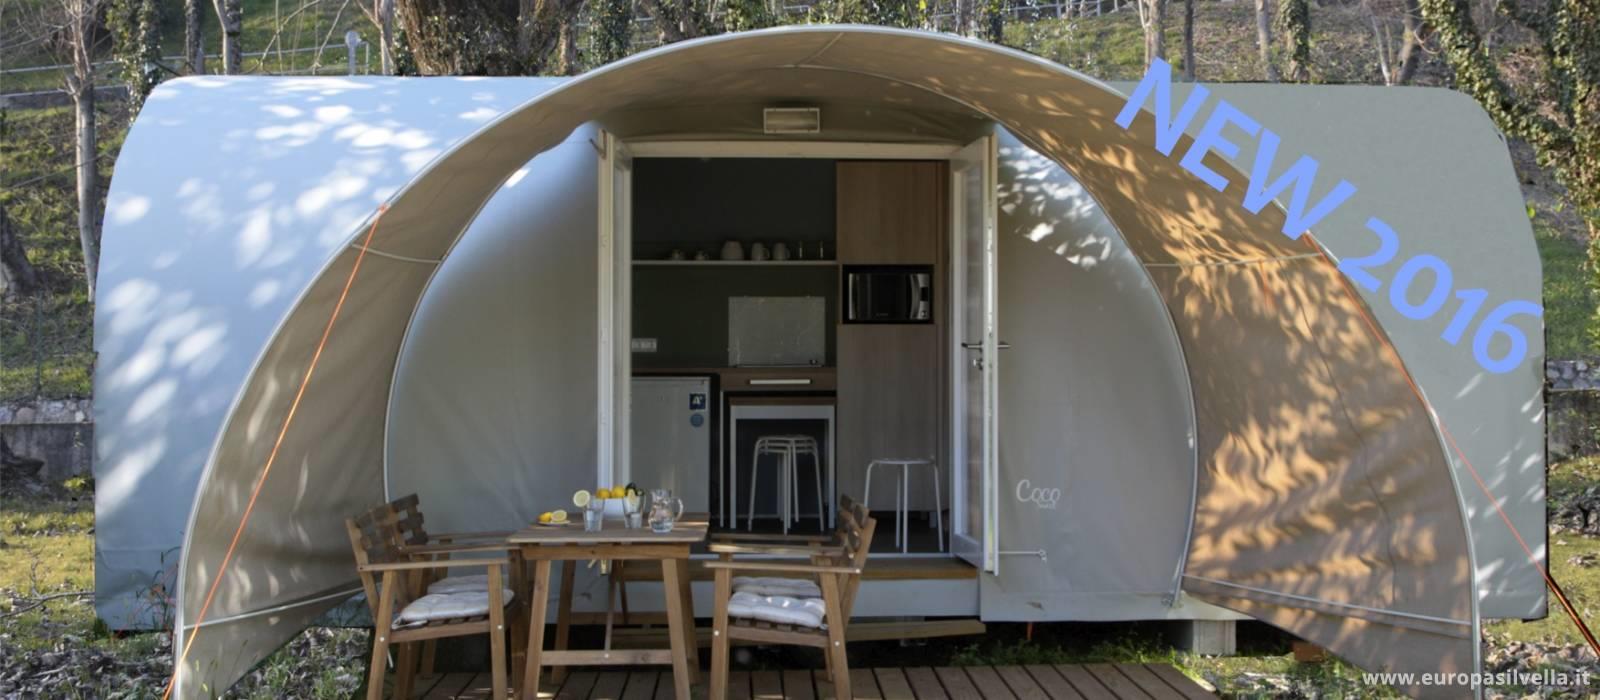 Accommodation - Tent Coco Blu - Camping Villaggio Europa Silvella